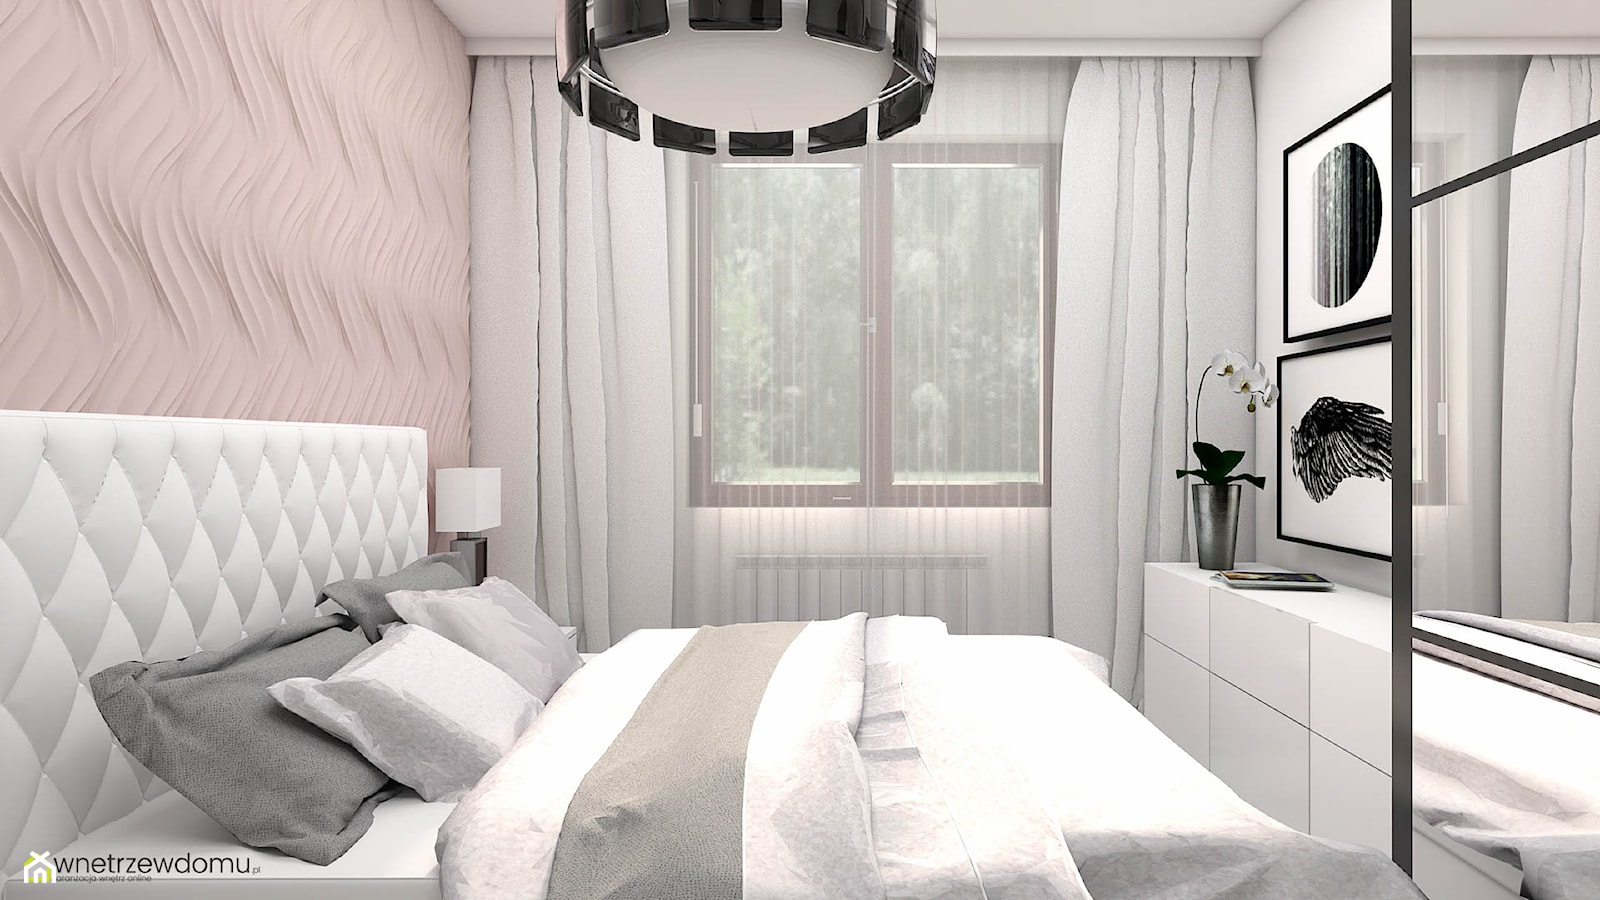 Mała sypialnia w stylu glamour - zdjęcie od wnetrzewdomu - Homebook